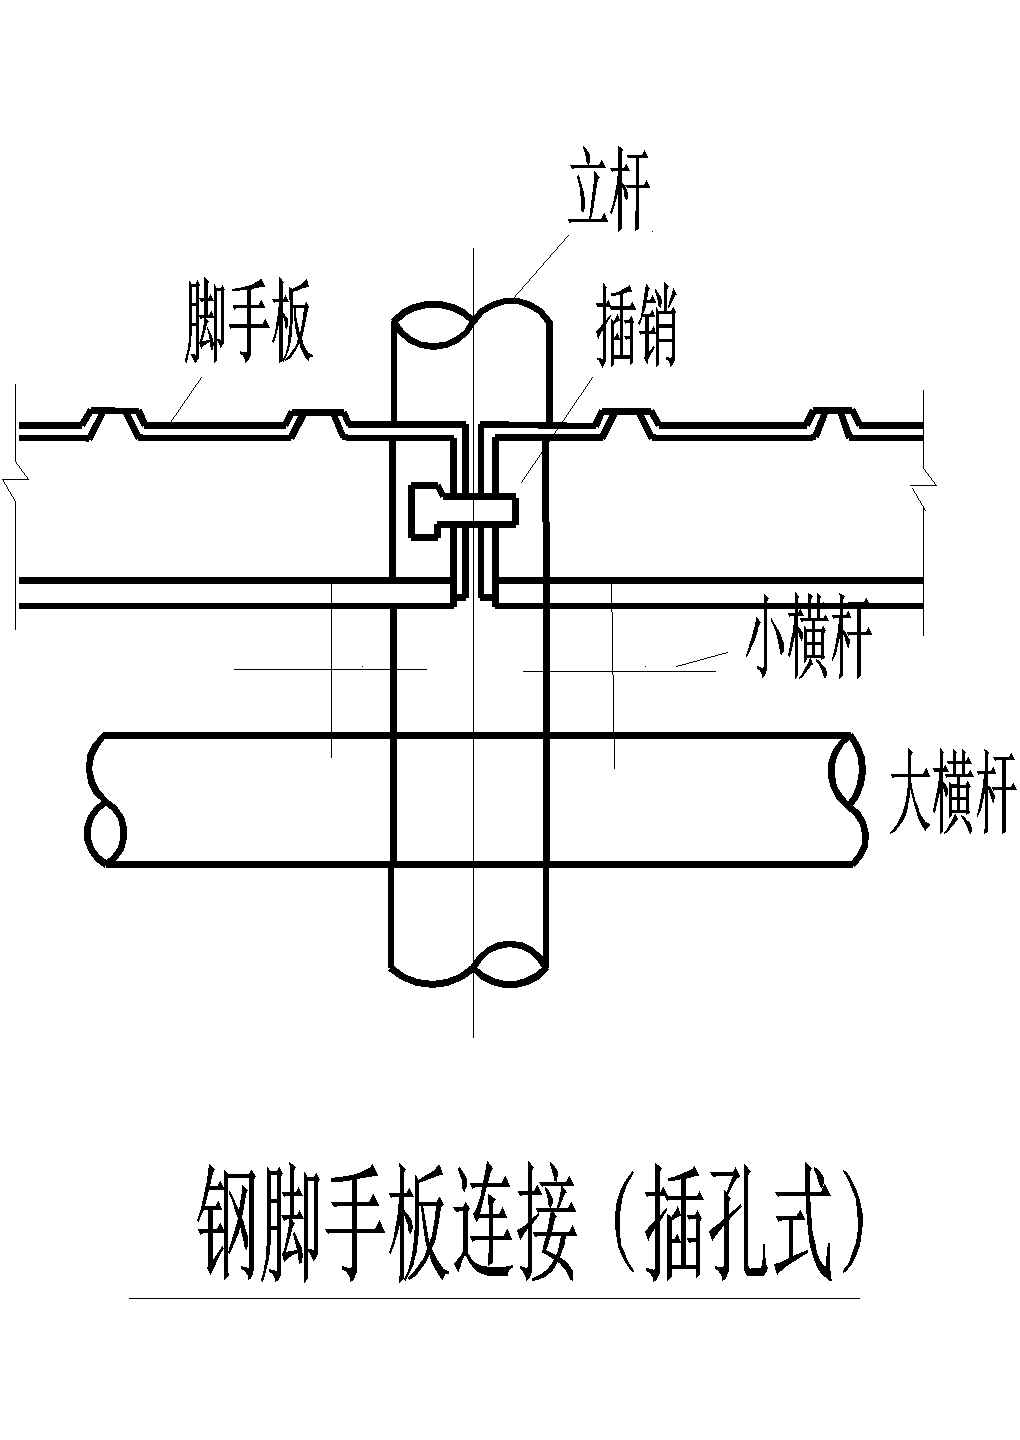 某建筑钢脚手板连接插孔式设计施工CAD图纸